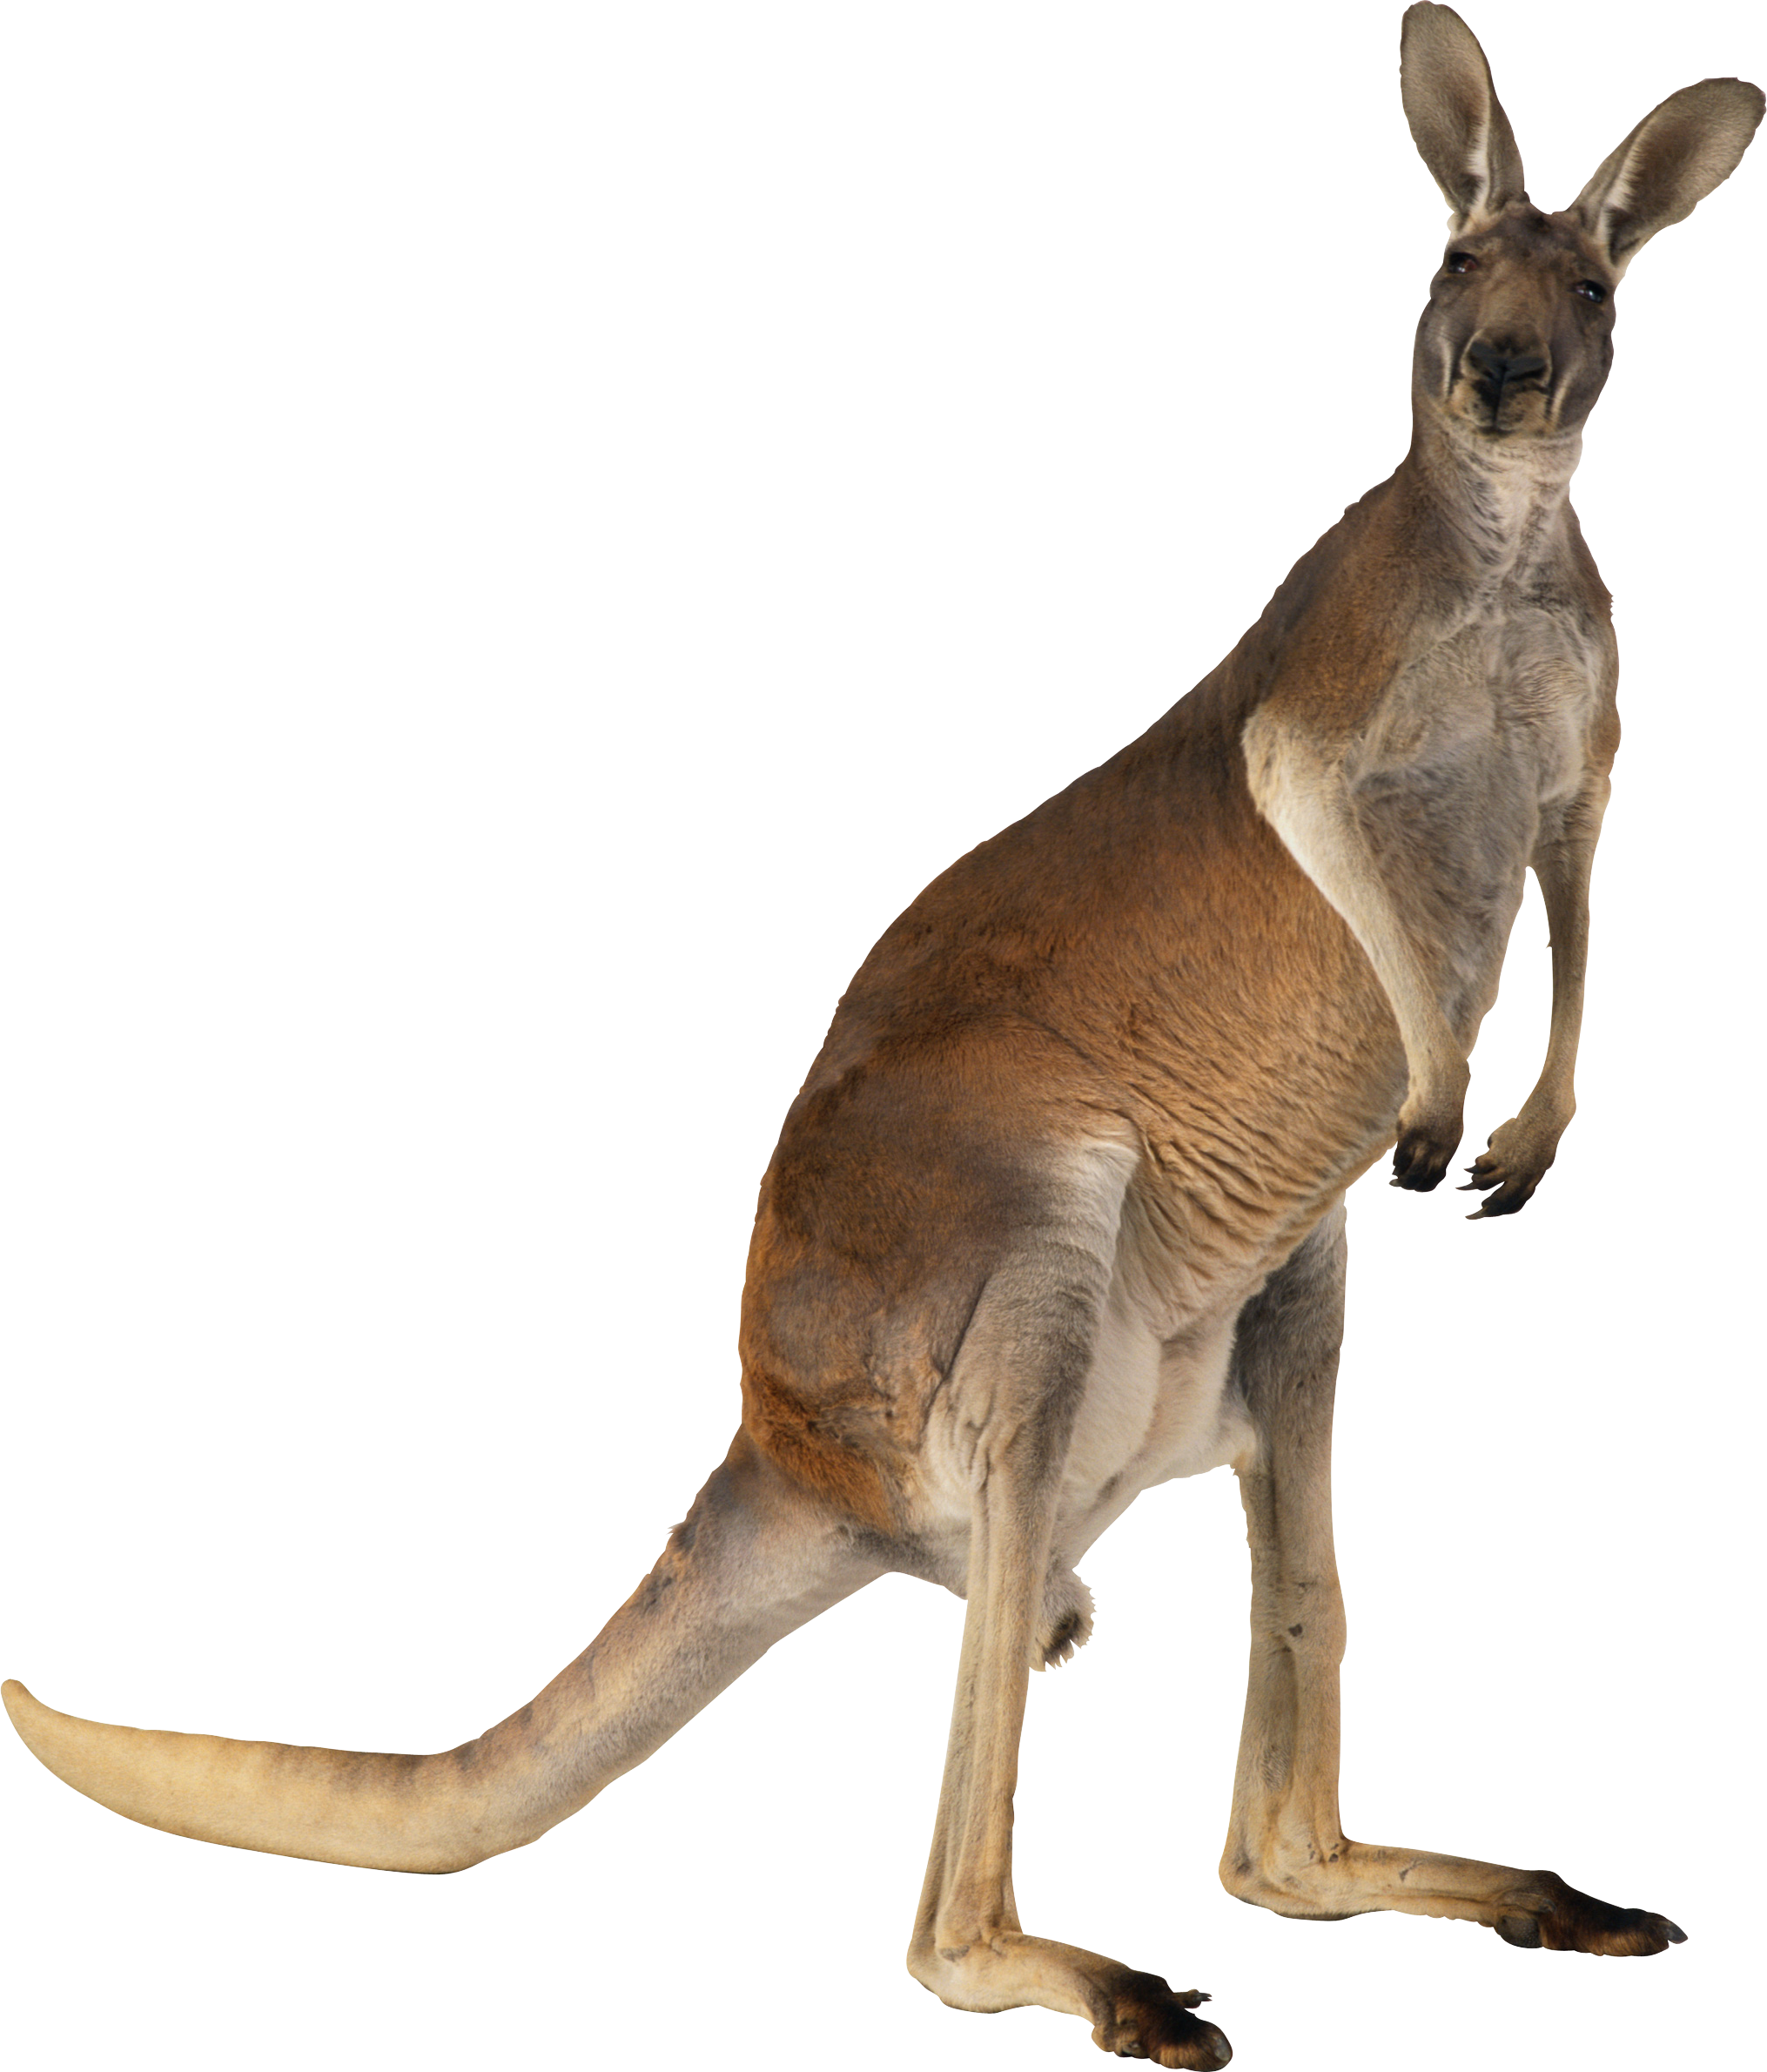 Kangaroo PNG images Download